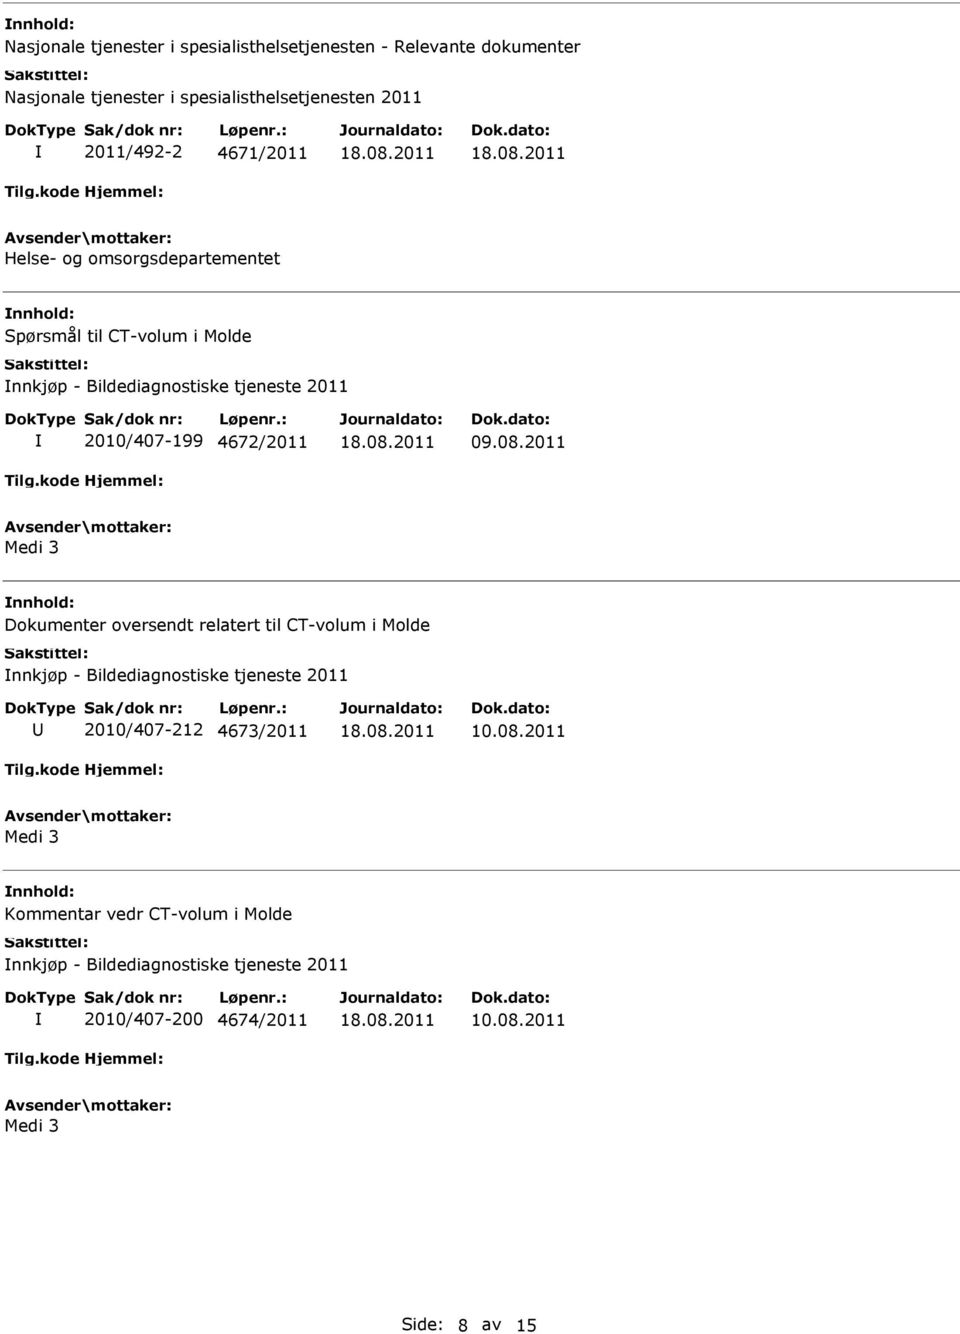 09.08.2011 Medi 3 Dokumenter oversendt relatert til CT-volum i Molde nnkjøp - Bildediagnostiske tjeneste 2011 2010/407-212 4673/2011 10.